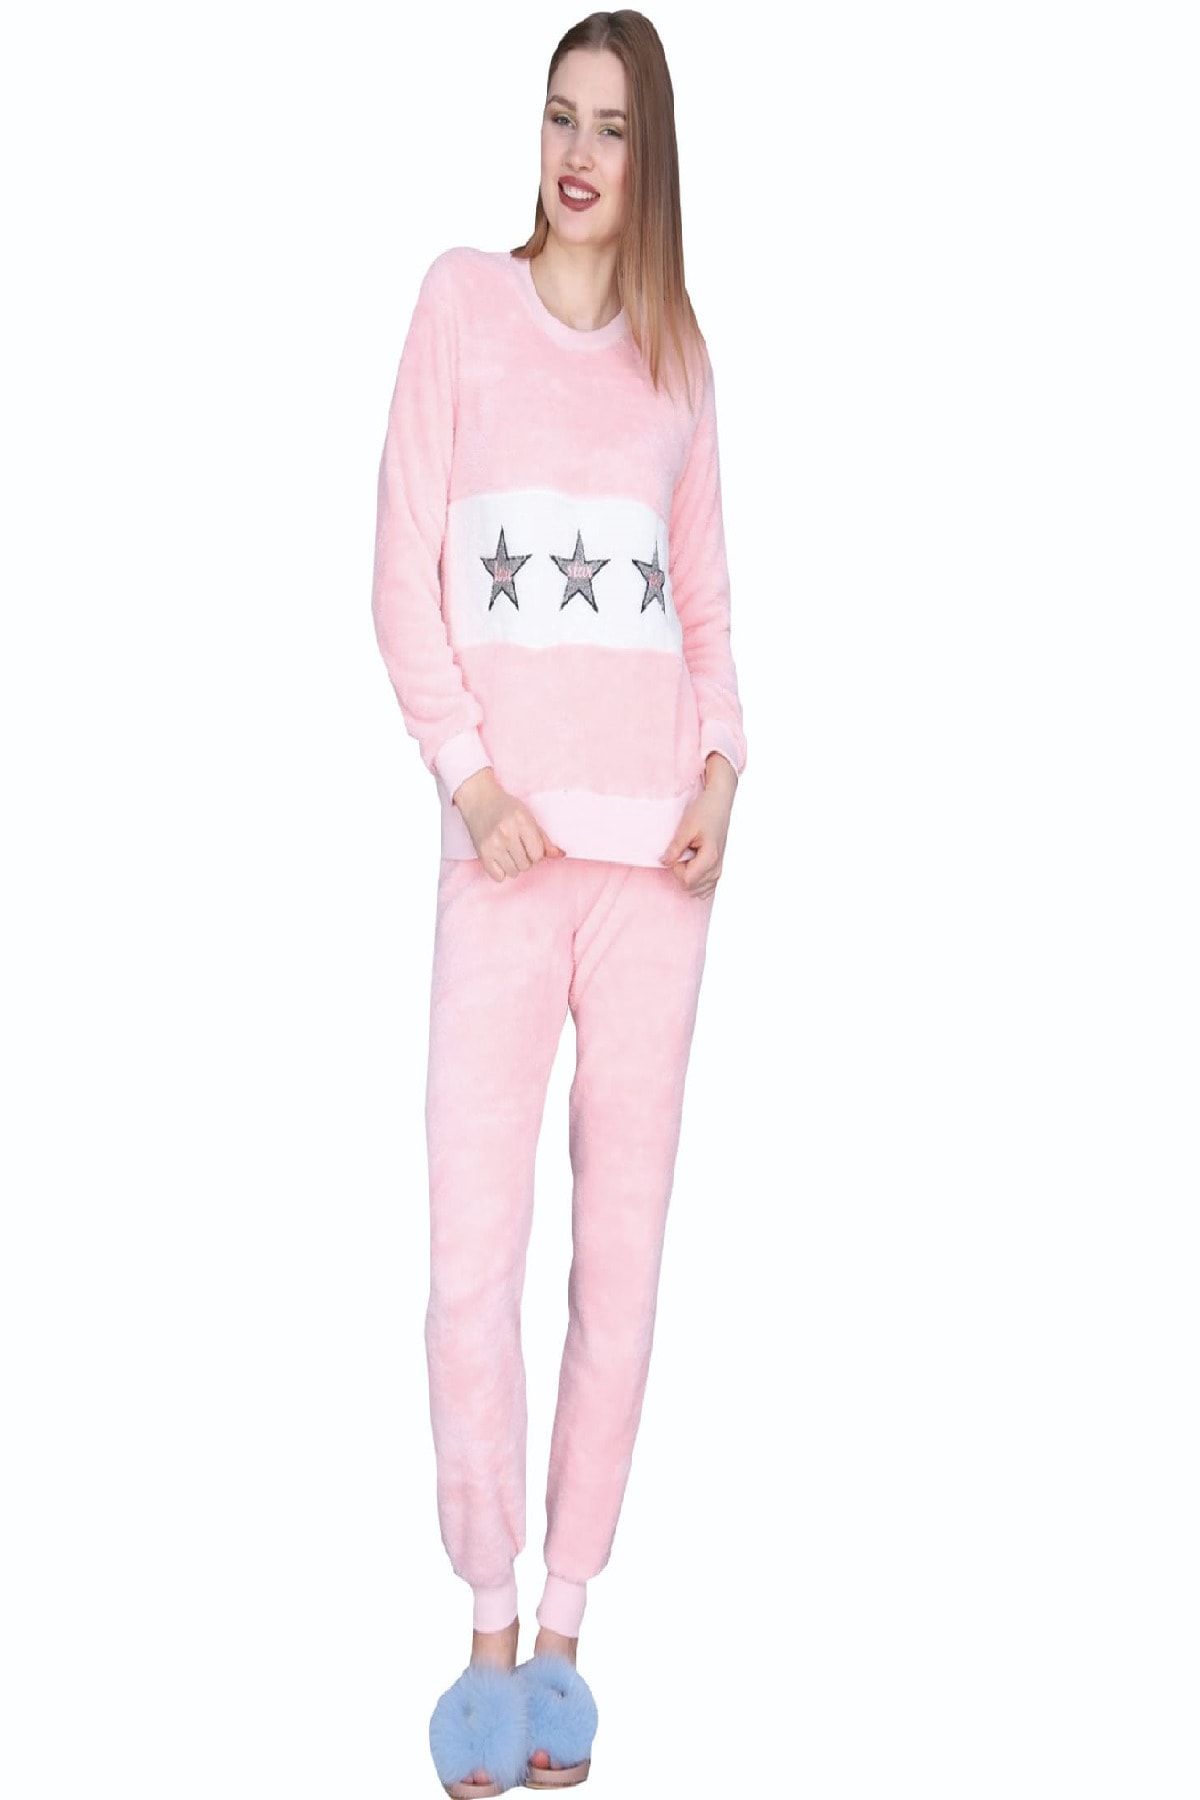 Otantik Kadın Kışlık Uzun Kollu Açık Pembe Welsoft Pijama Takımı